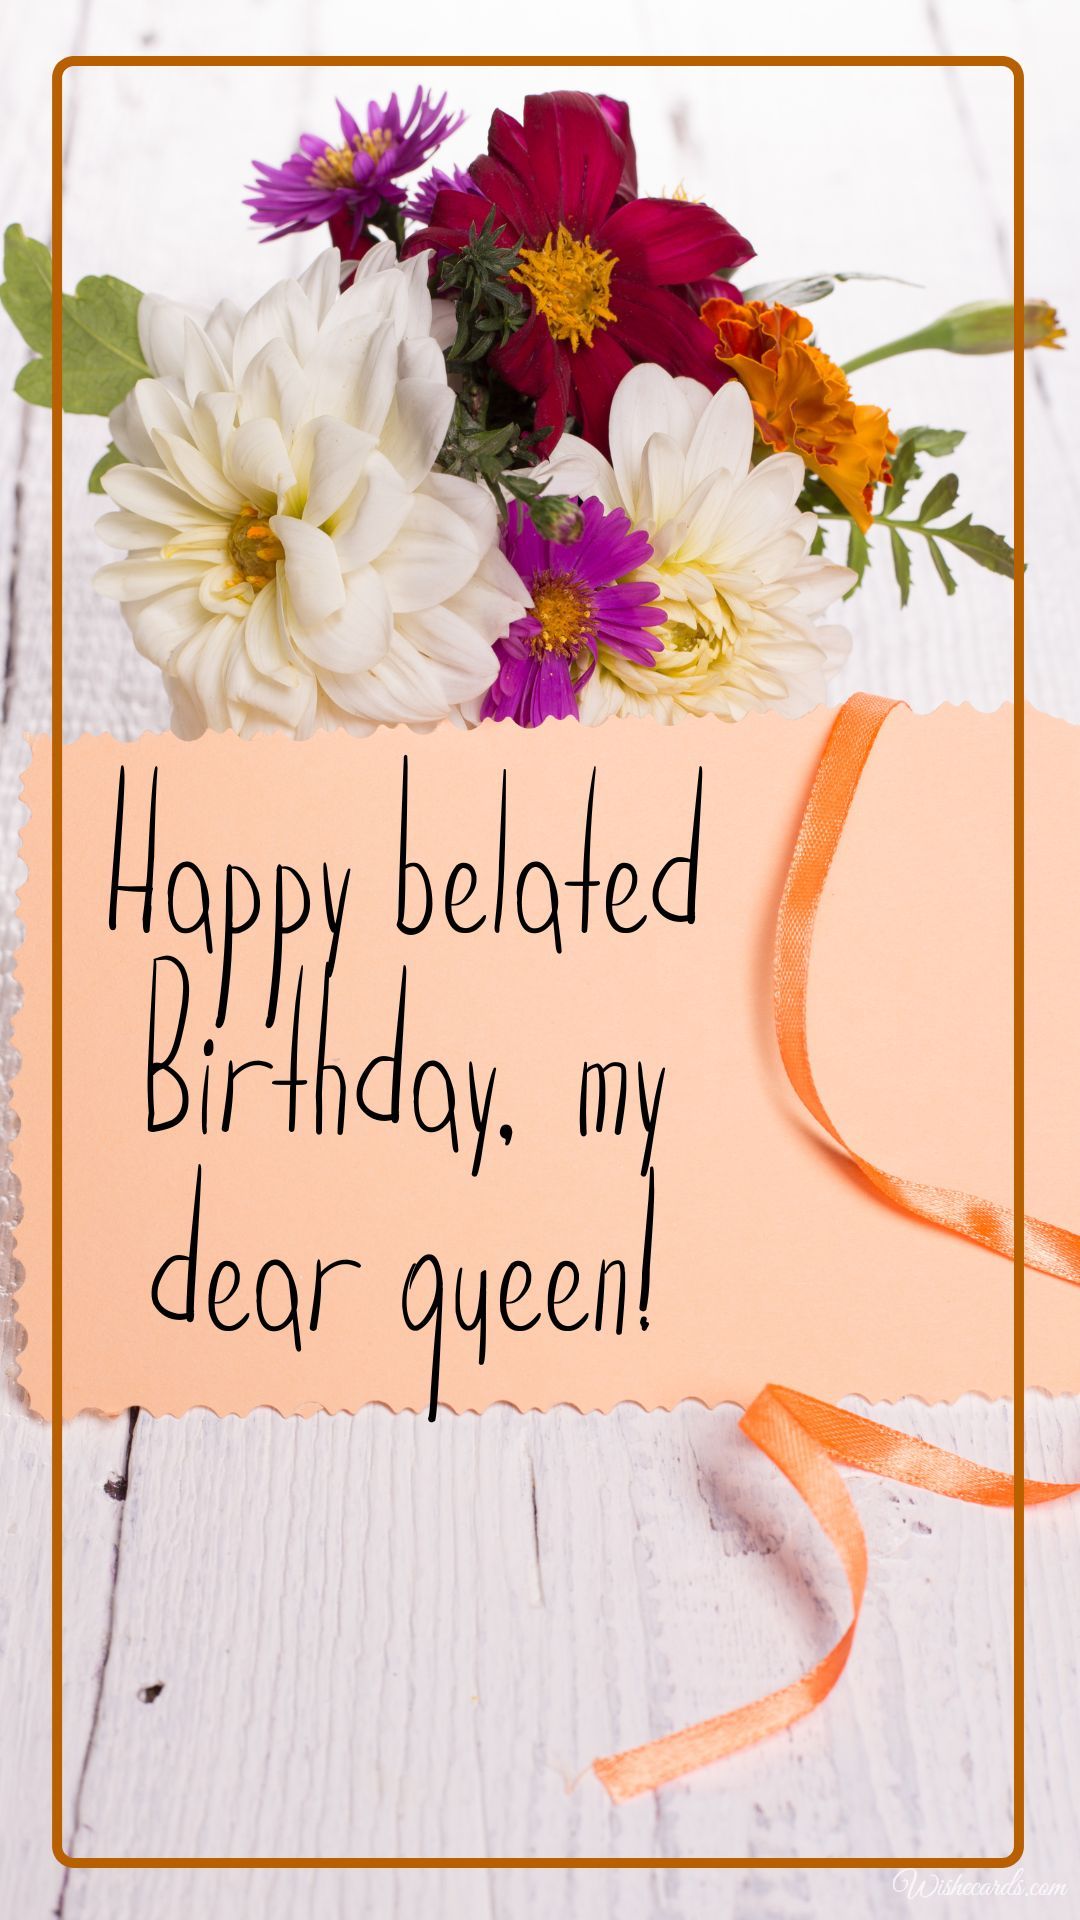 Happy Belated Birthday Queen Image